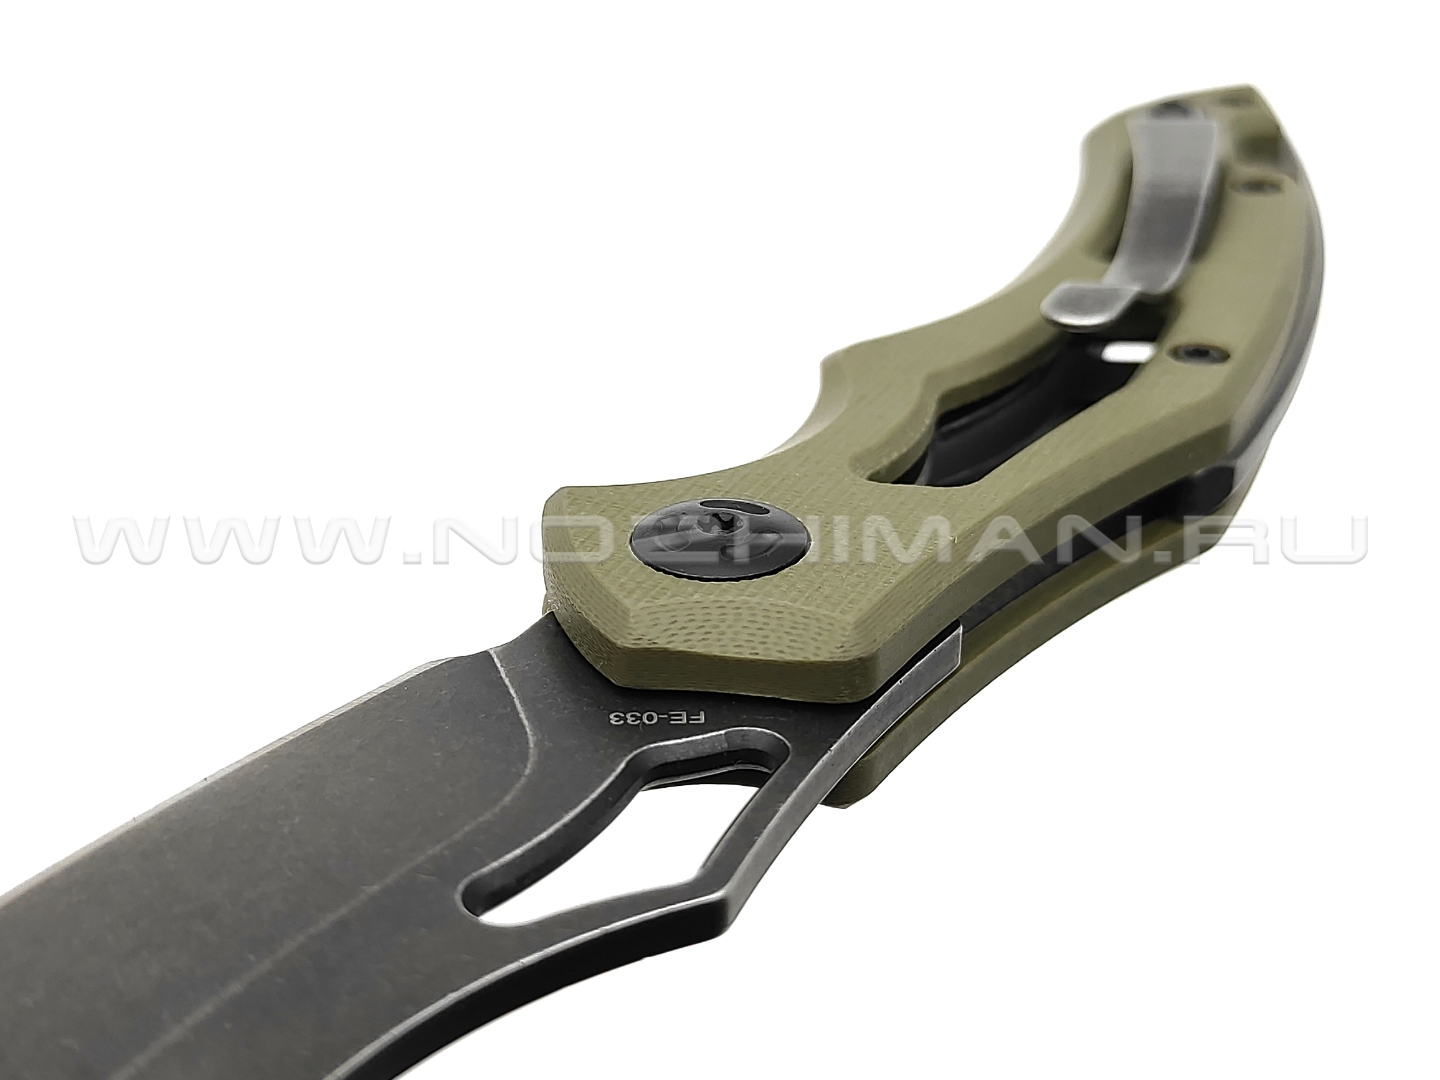 Нож Fox Edge Sparrow FE-033 сталь 9Cr13, рукоять G10 green